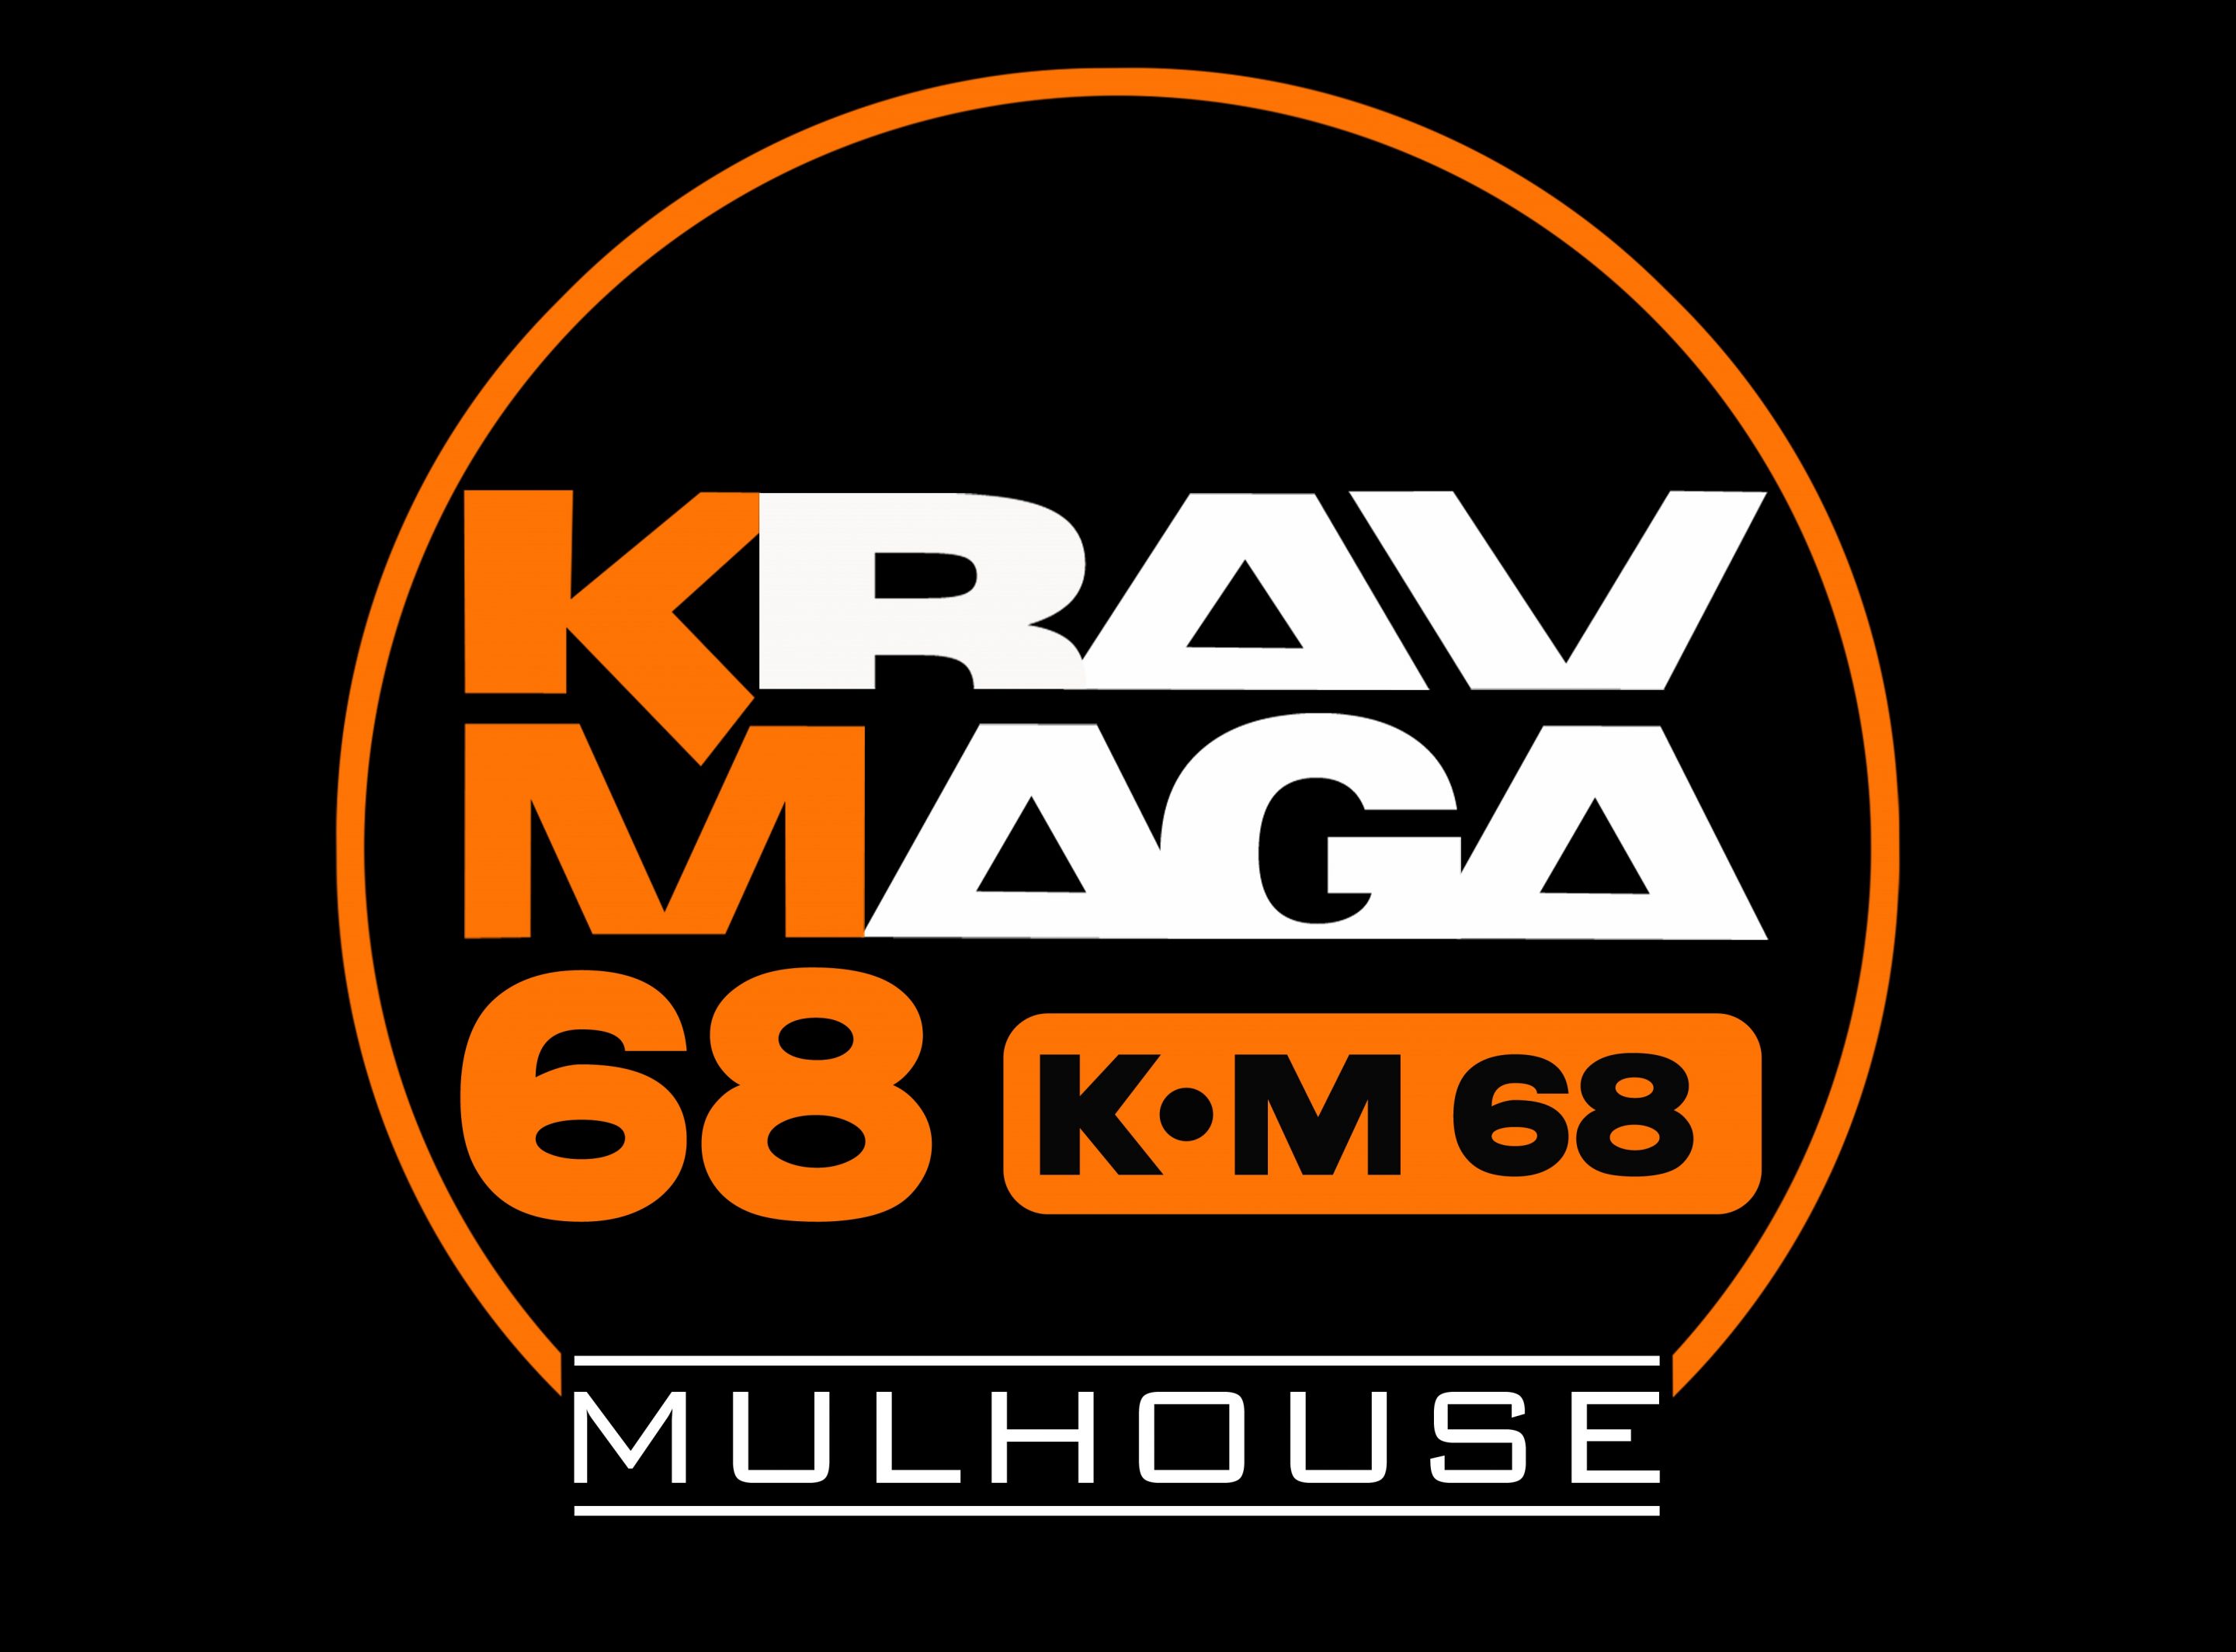 Club Krav Maga 68 - Mulhouse